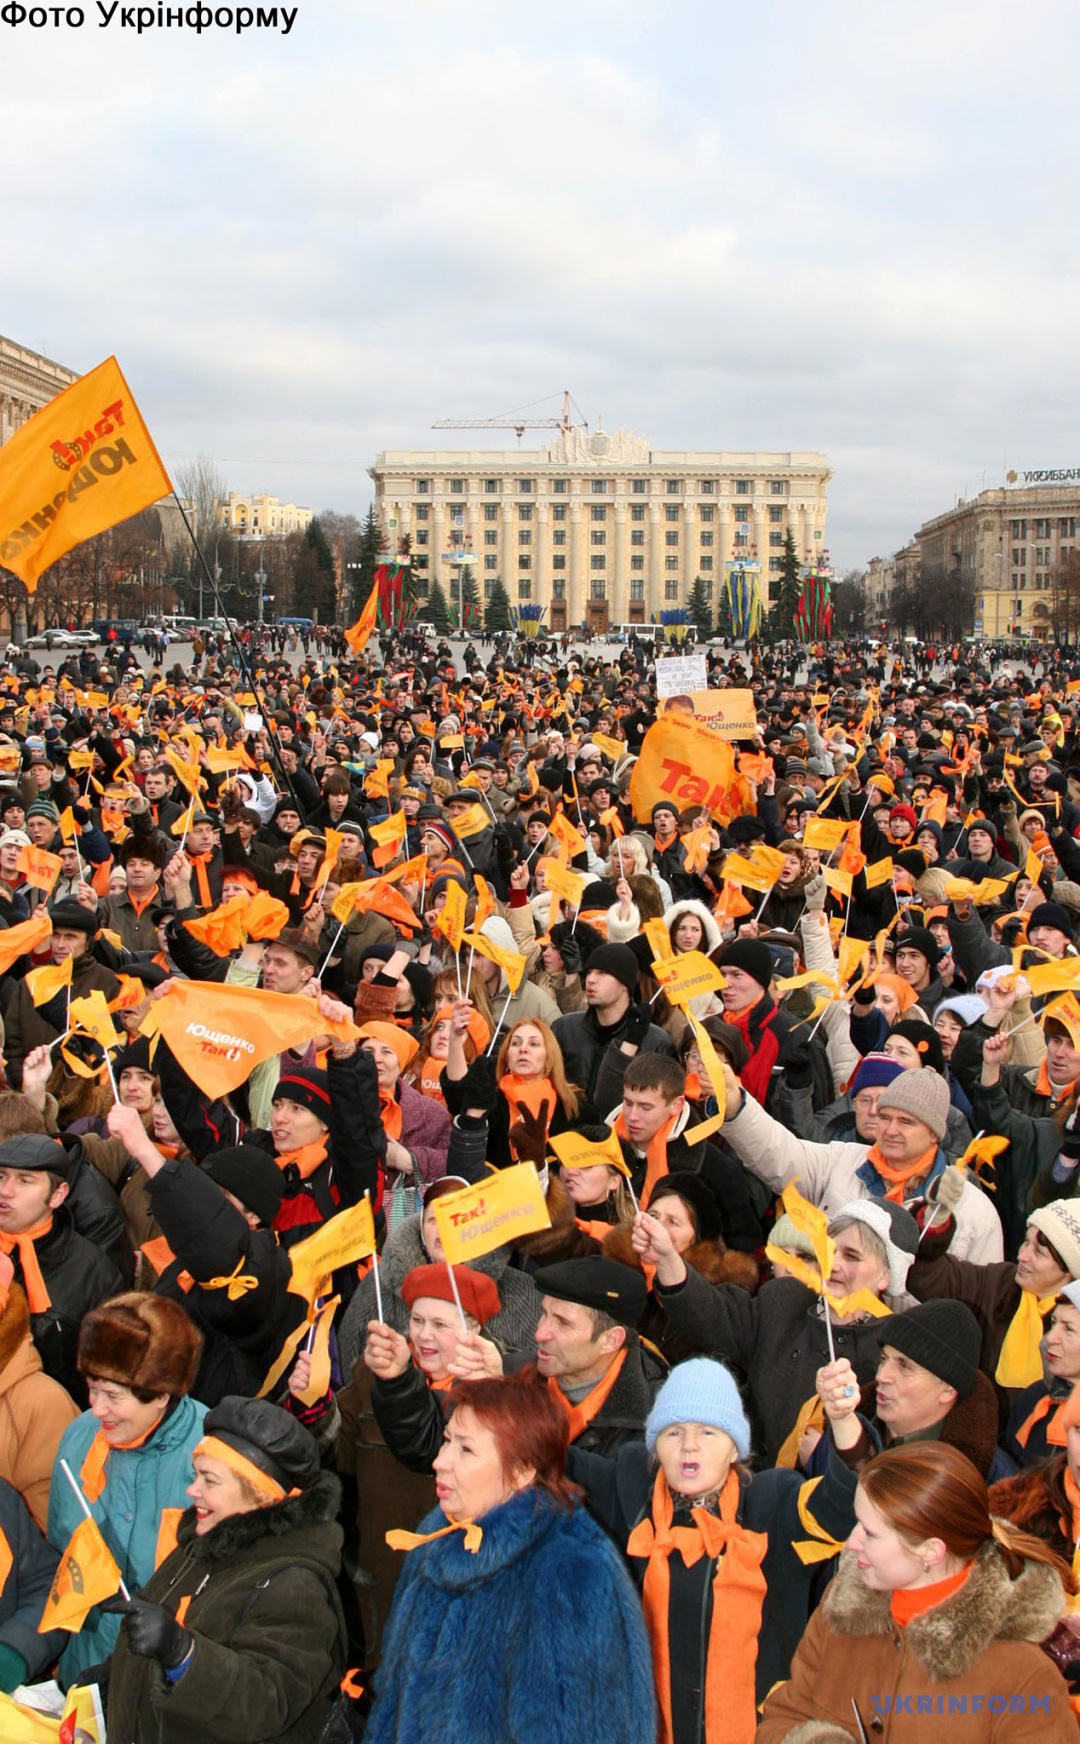 70 mille habitants de Kharkiv, partisans du candidat à la présidence Viktor Yushchenko, ont rejoint le mouvement de protestation national en descendant dans les rues de la ville le 23 novembre 2004. / Photo : Andriy Avdoshyn